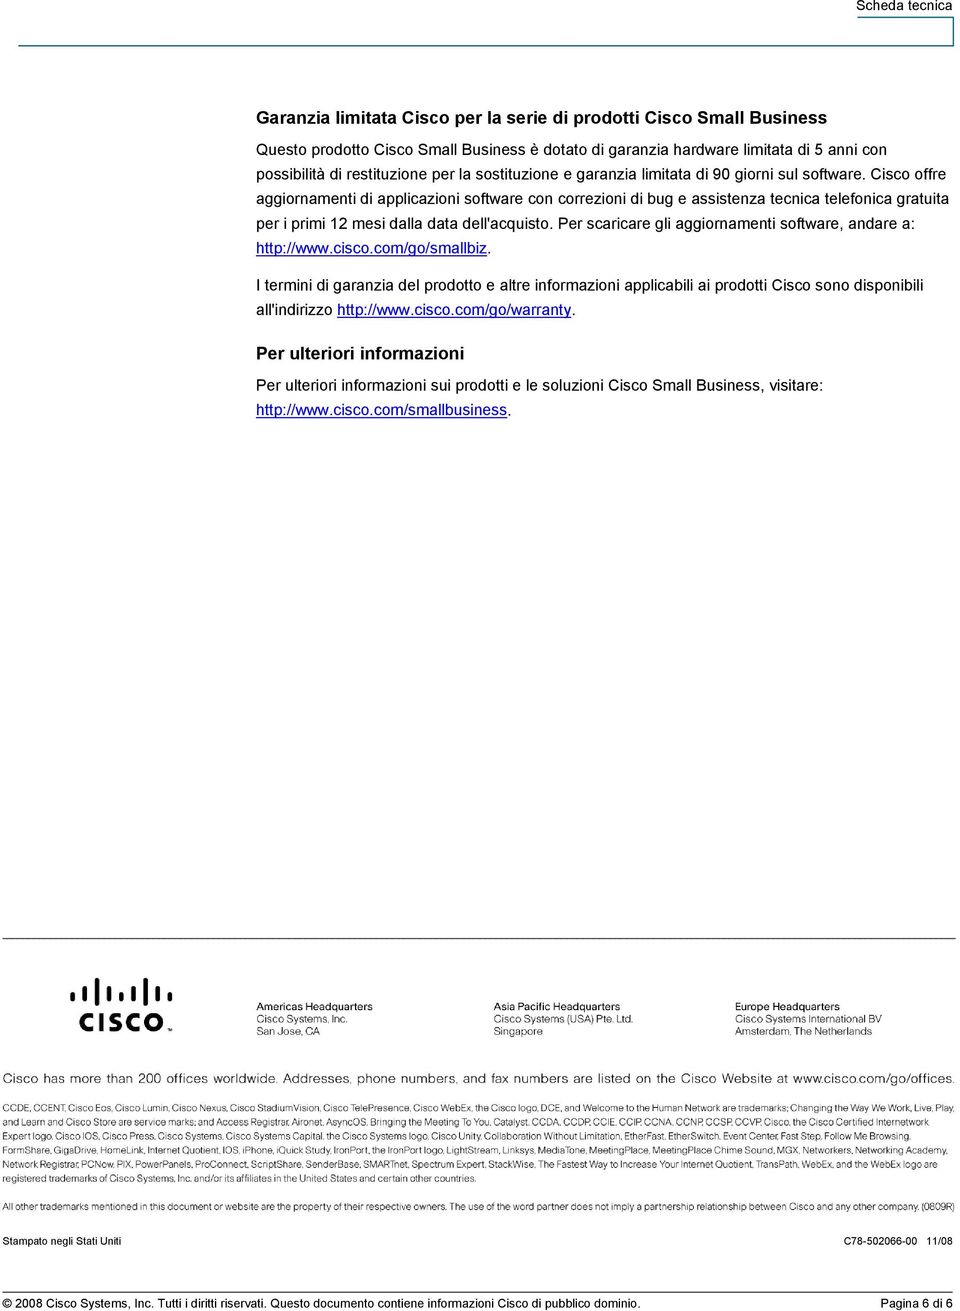 Cisco offre aggiornamenti di applicazioni software con correzioni di bug e assistenza tecnica telefonica gratuita per i primi 12 mesi dalla data dell'acquisto.